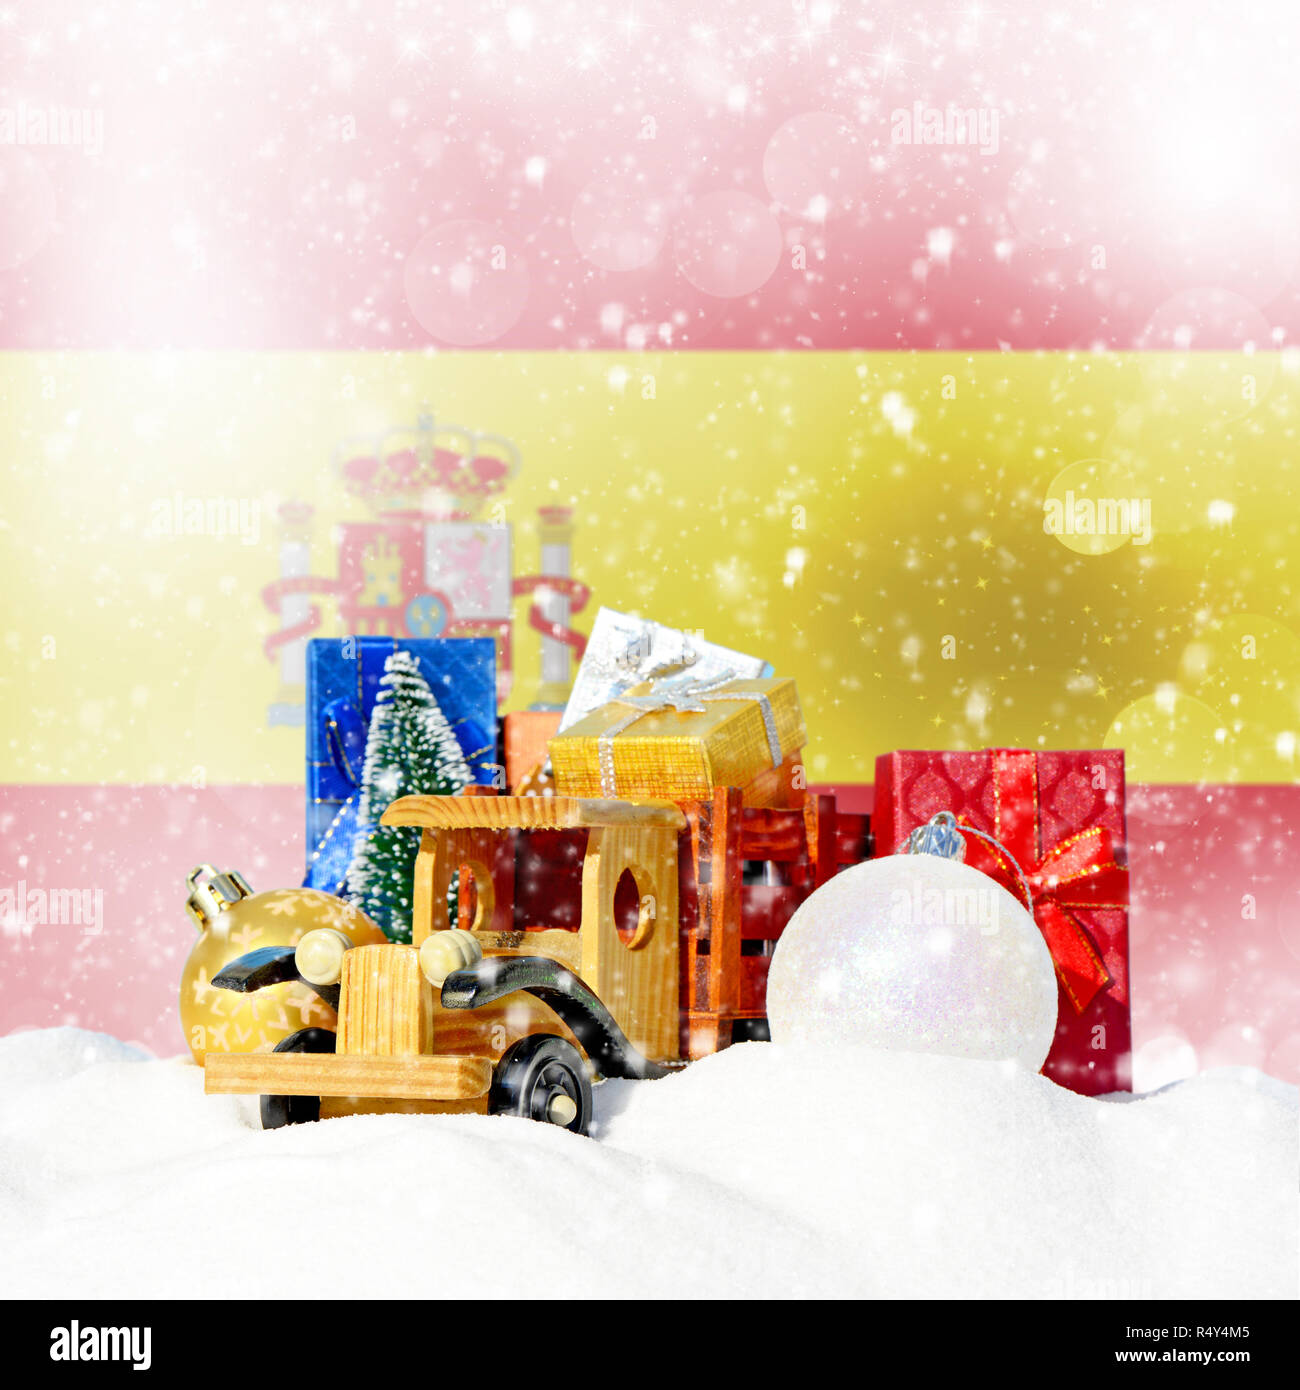 Weihnachten Hintergrund. Spielzeug-LKW mit Geschenken, Neues Jahr Tanne, Kugeln im Schneetreiben und spanische Flagge Stockfoto